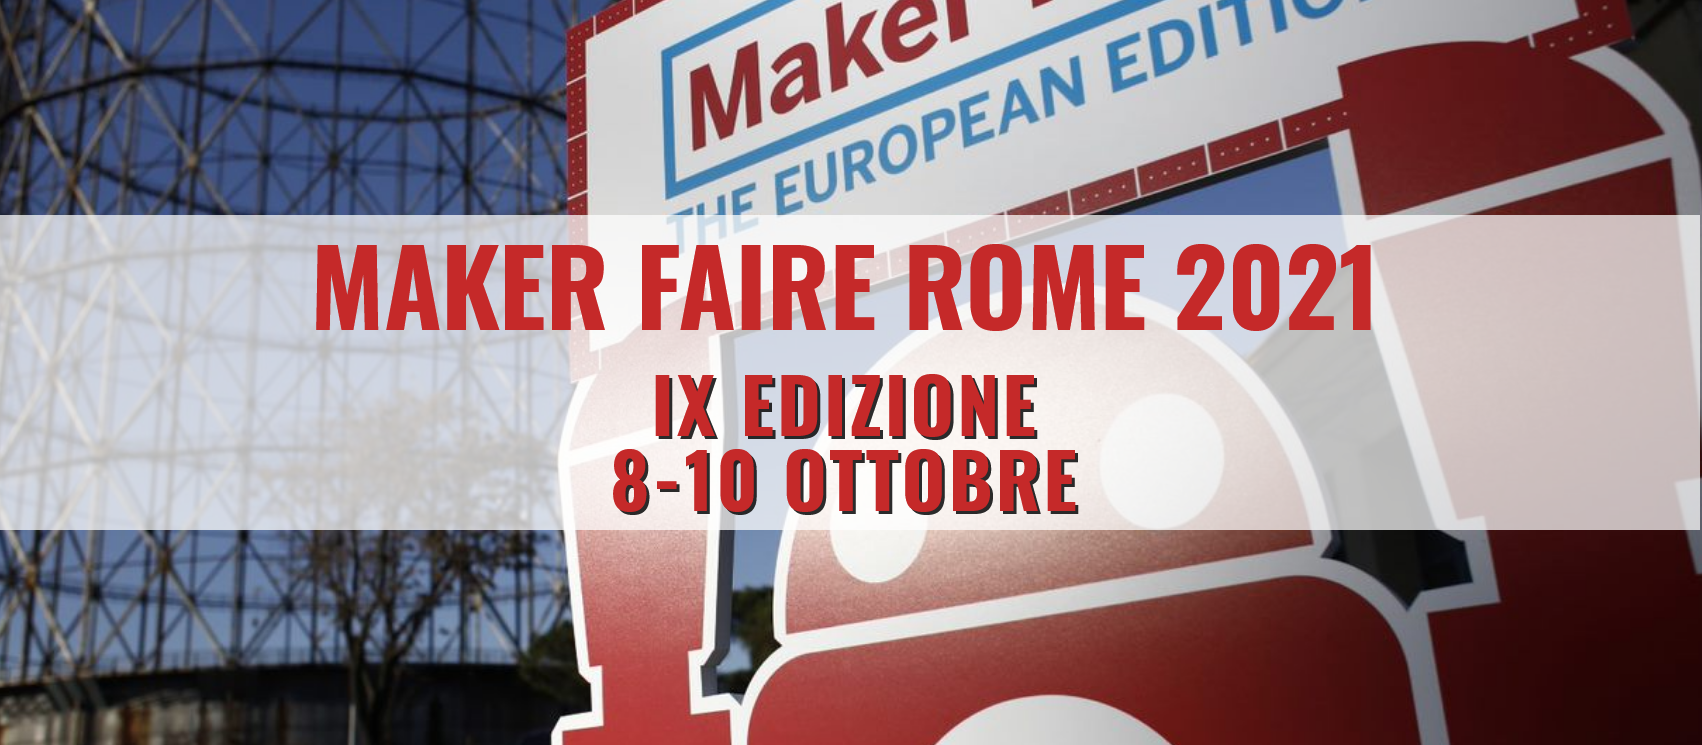 Maker Faire Rome: al via la Call for Makers 2021